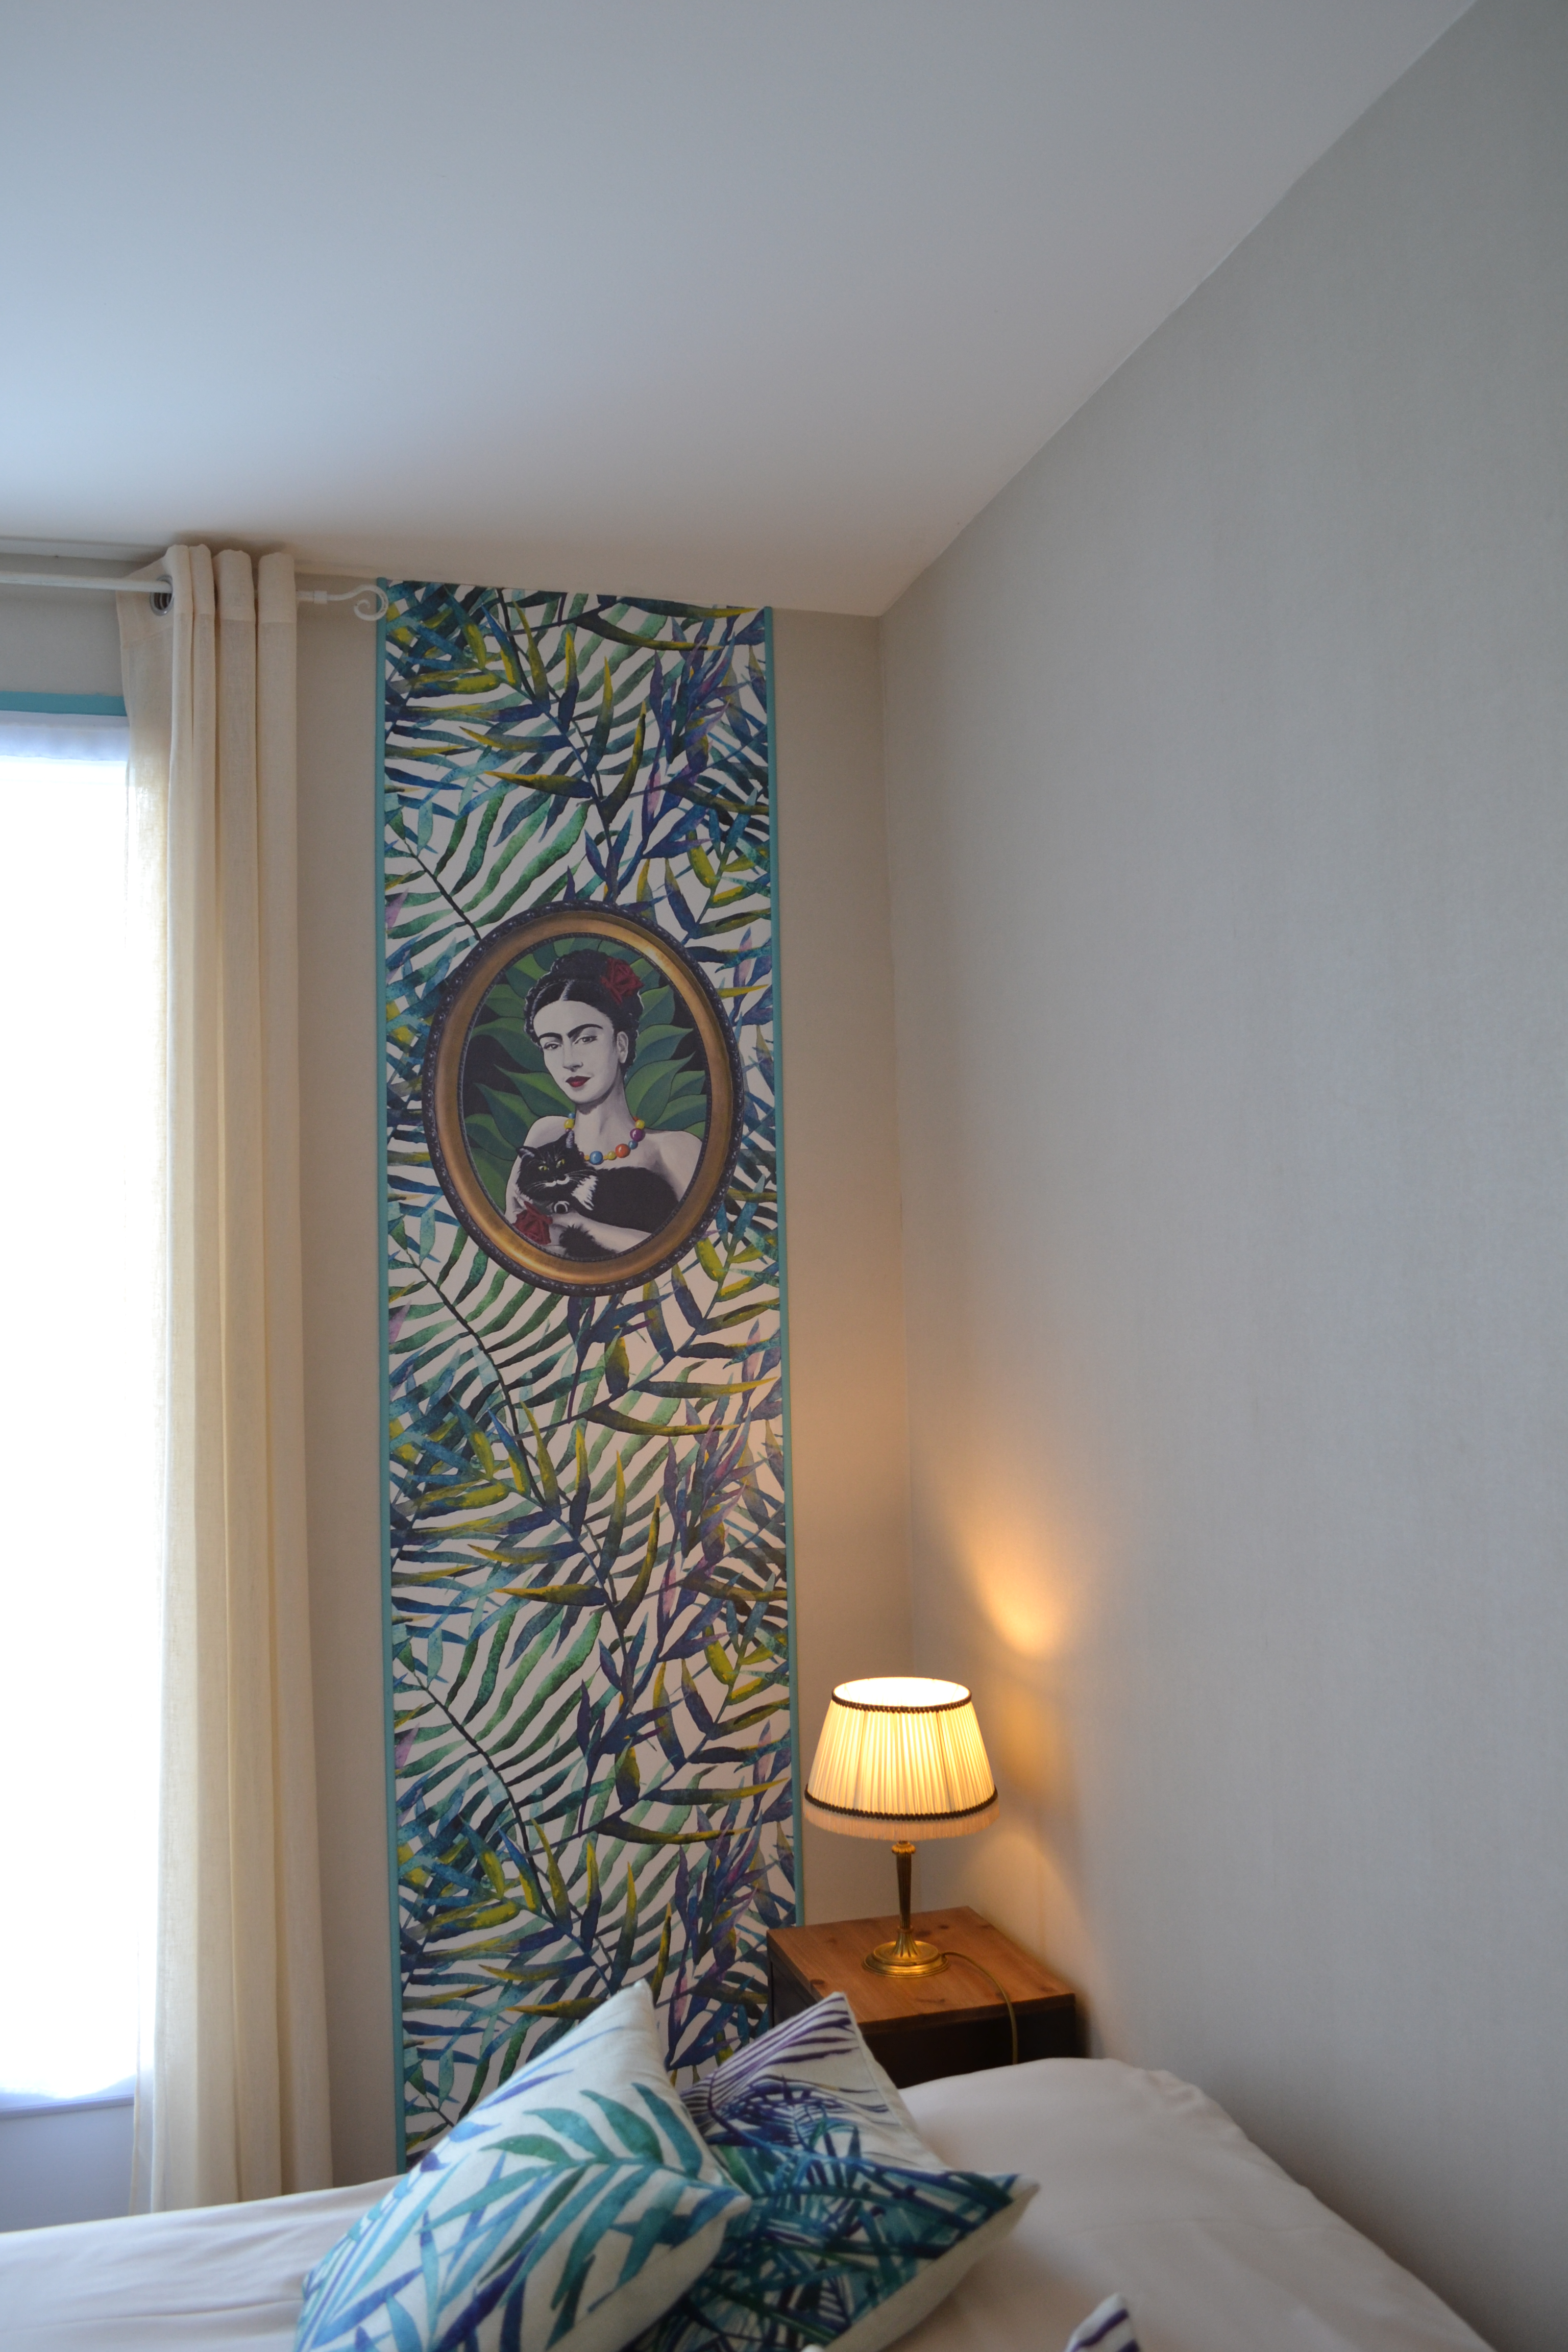 Chambre duo supérieure - lit 160cm avec terrasse proche de la Cotinière île d'Oléron Charente Maritime - charme et confort douillet - lé unique papier peint Frida Kahlo peintre révolutionnaire et féministe